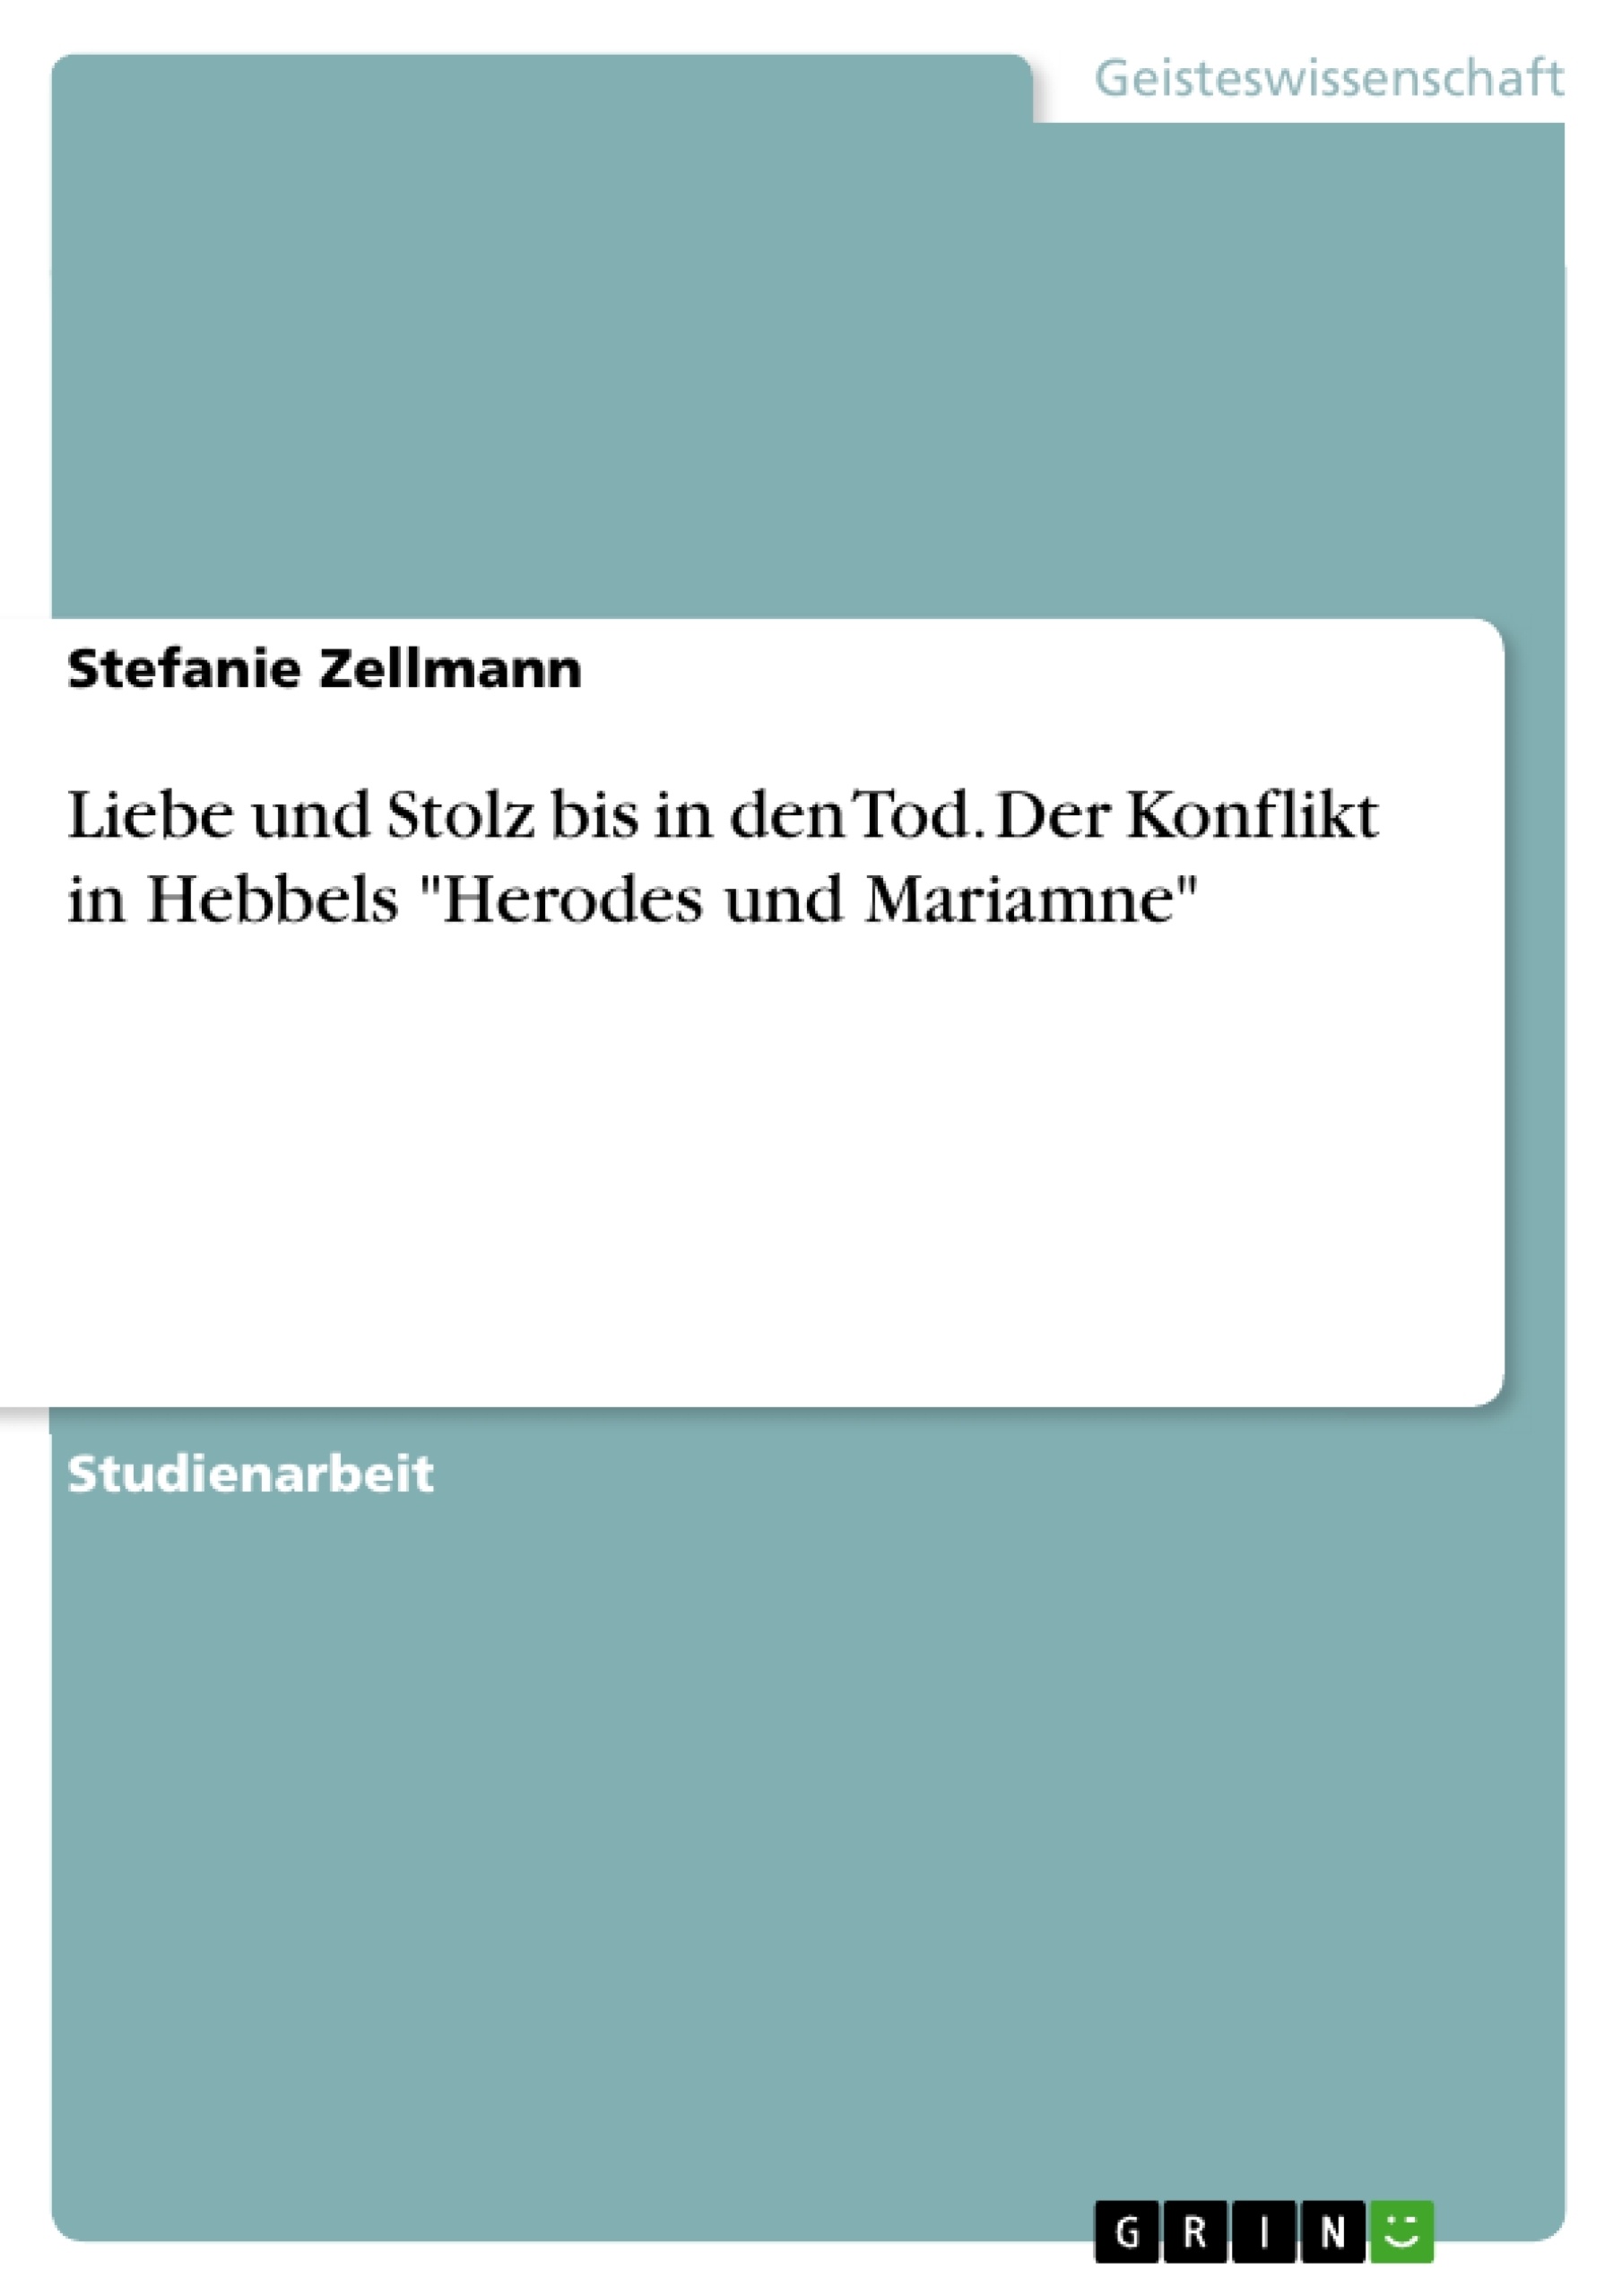 Título: Liebe und Stolz bis in den Tod. Der Konflikt in Hebbels "Herodes und Mariamne"